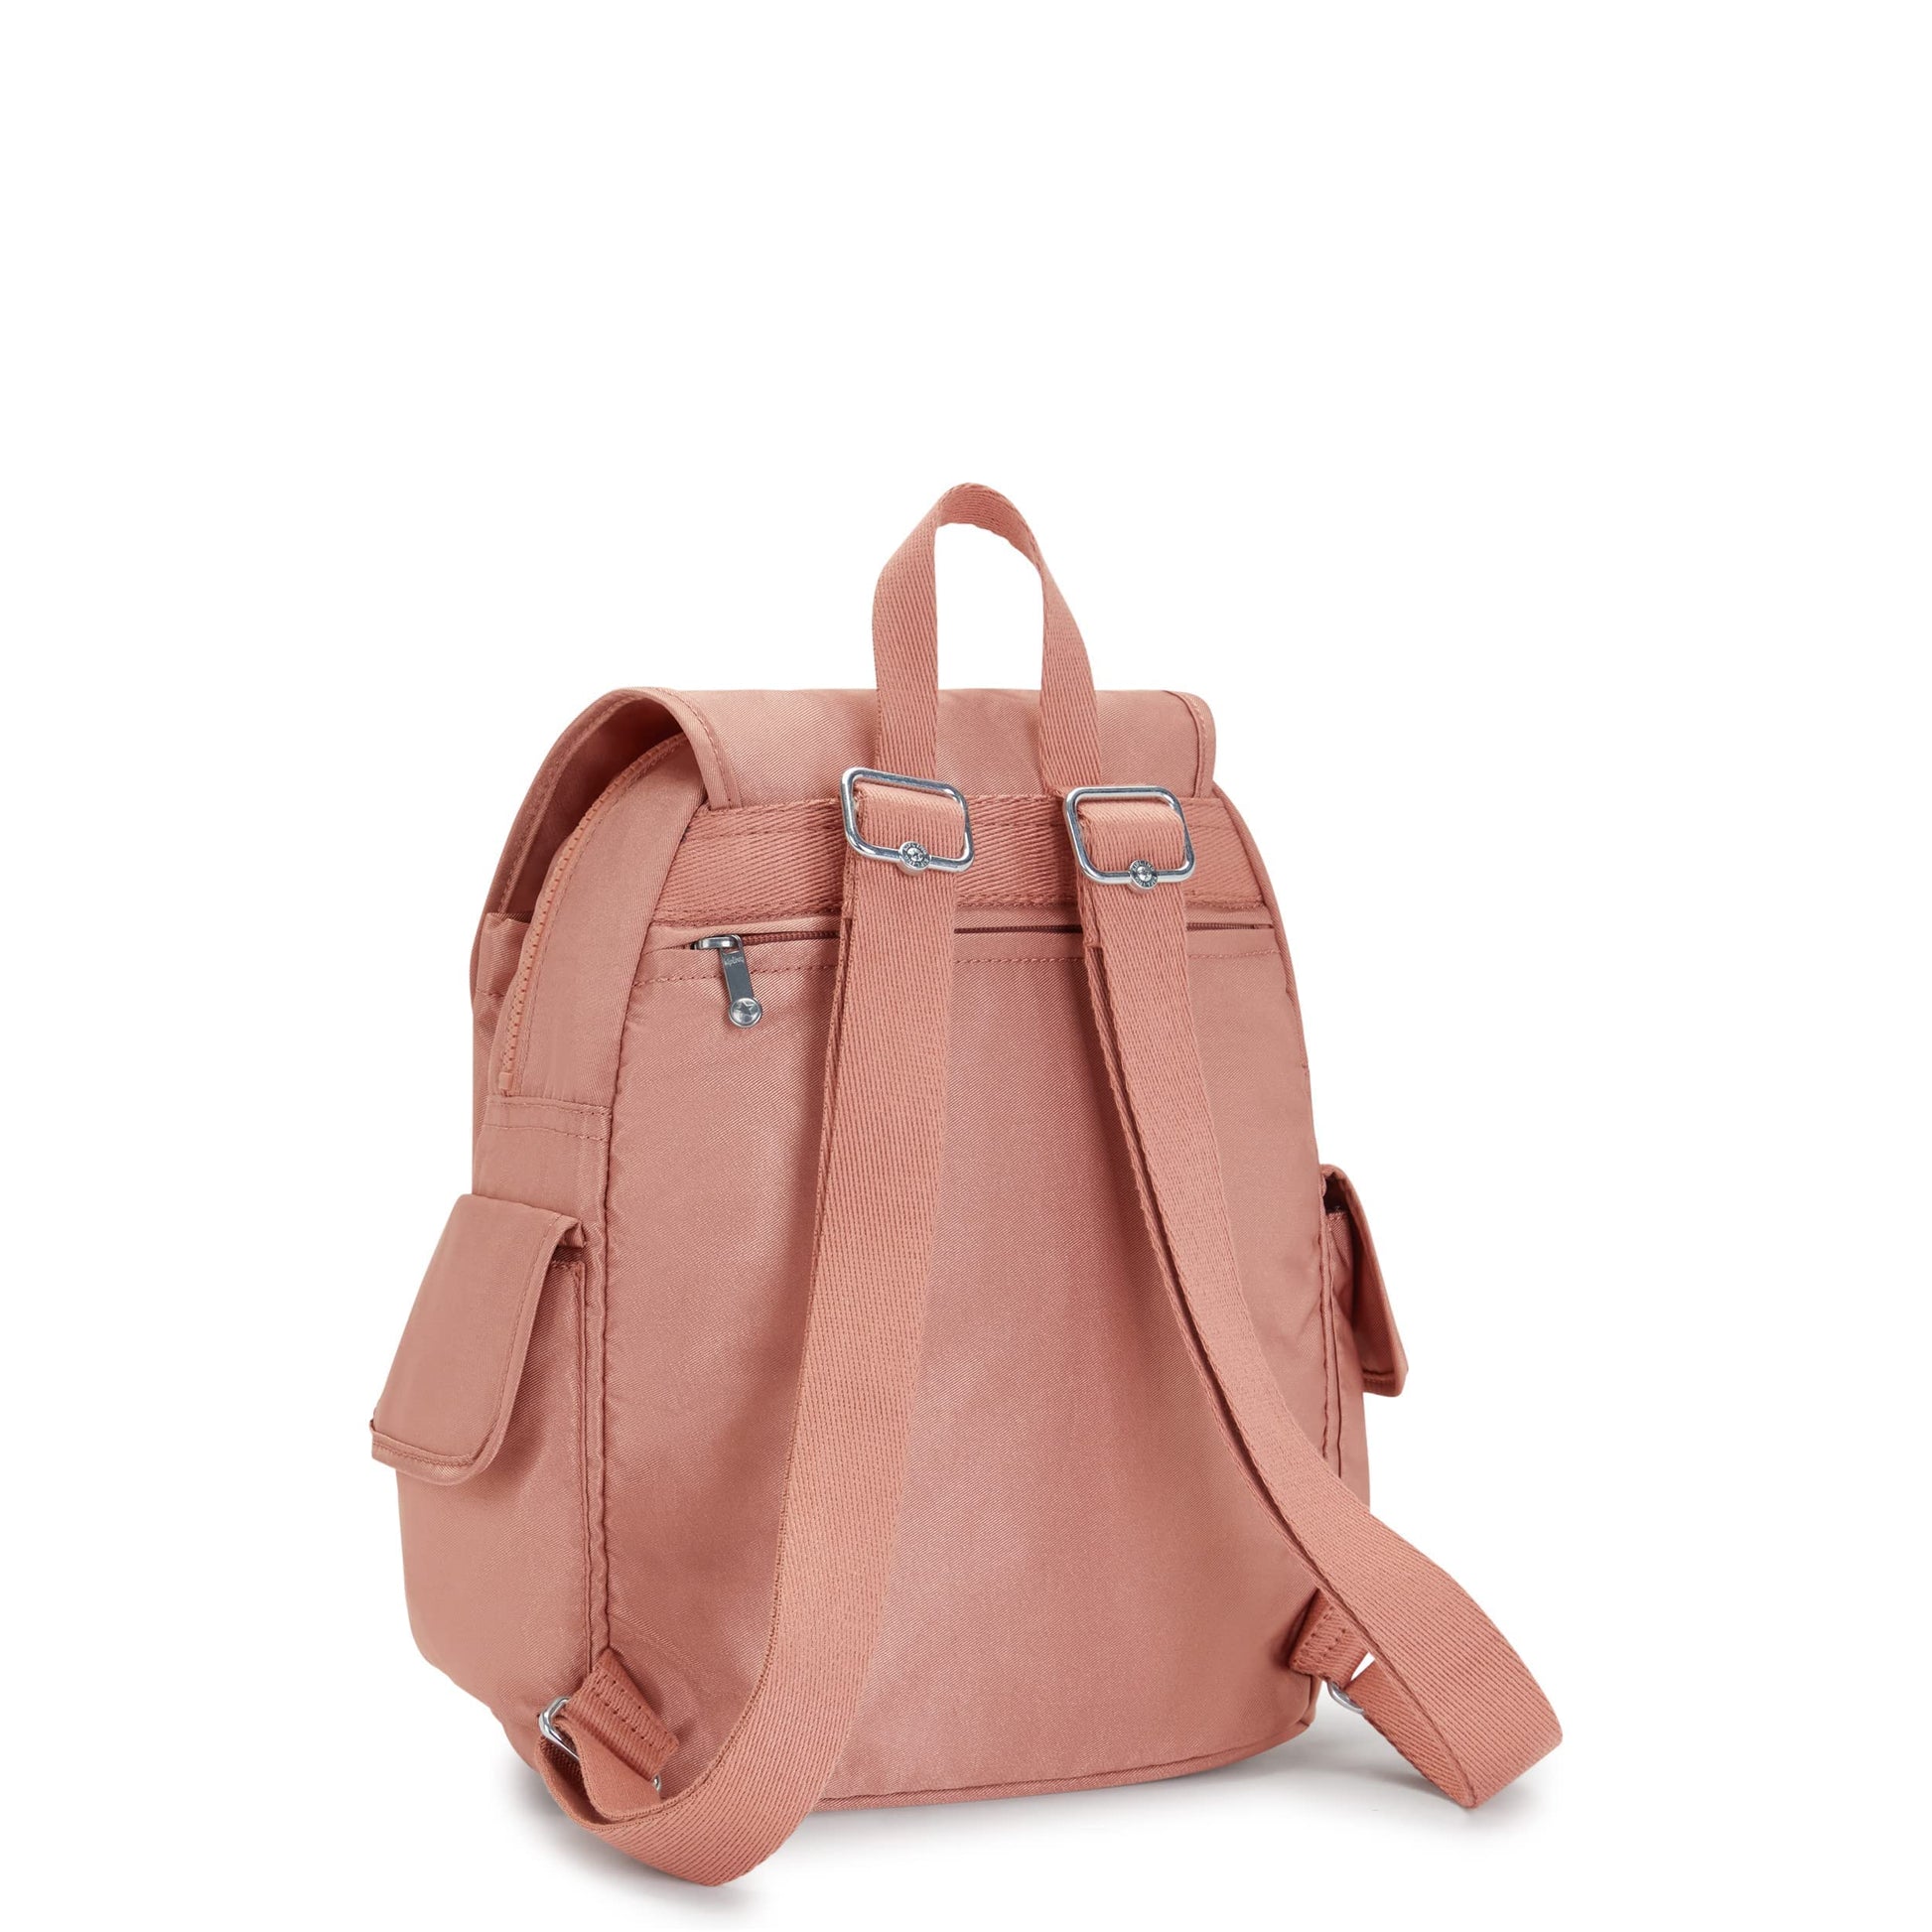 Kipling Women’s City Pack Small Backpack, Lightweight Versatile Daypack, Nylon School Bag